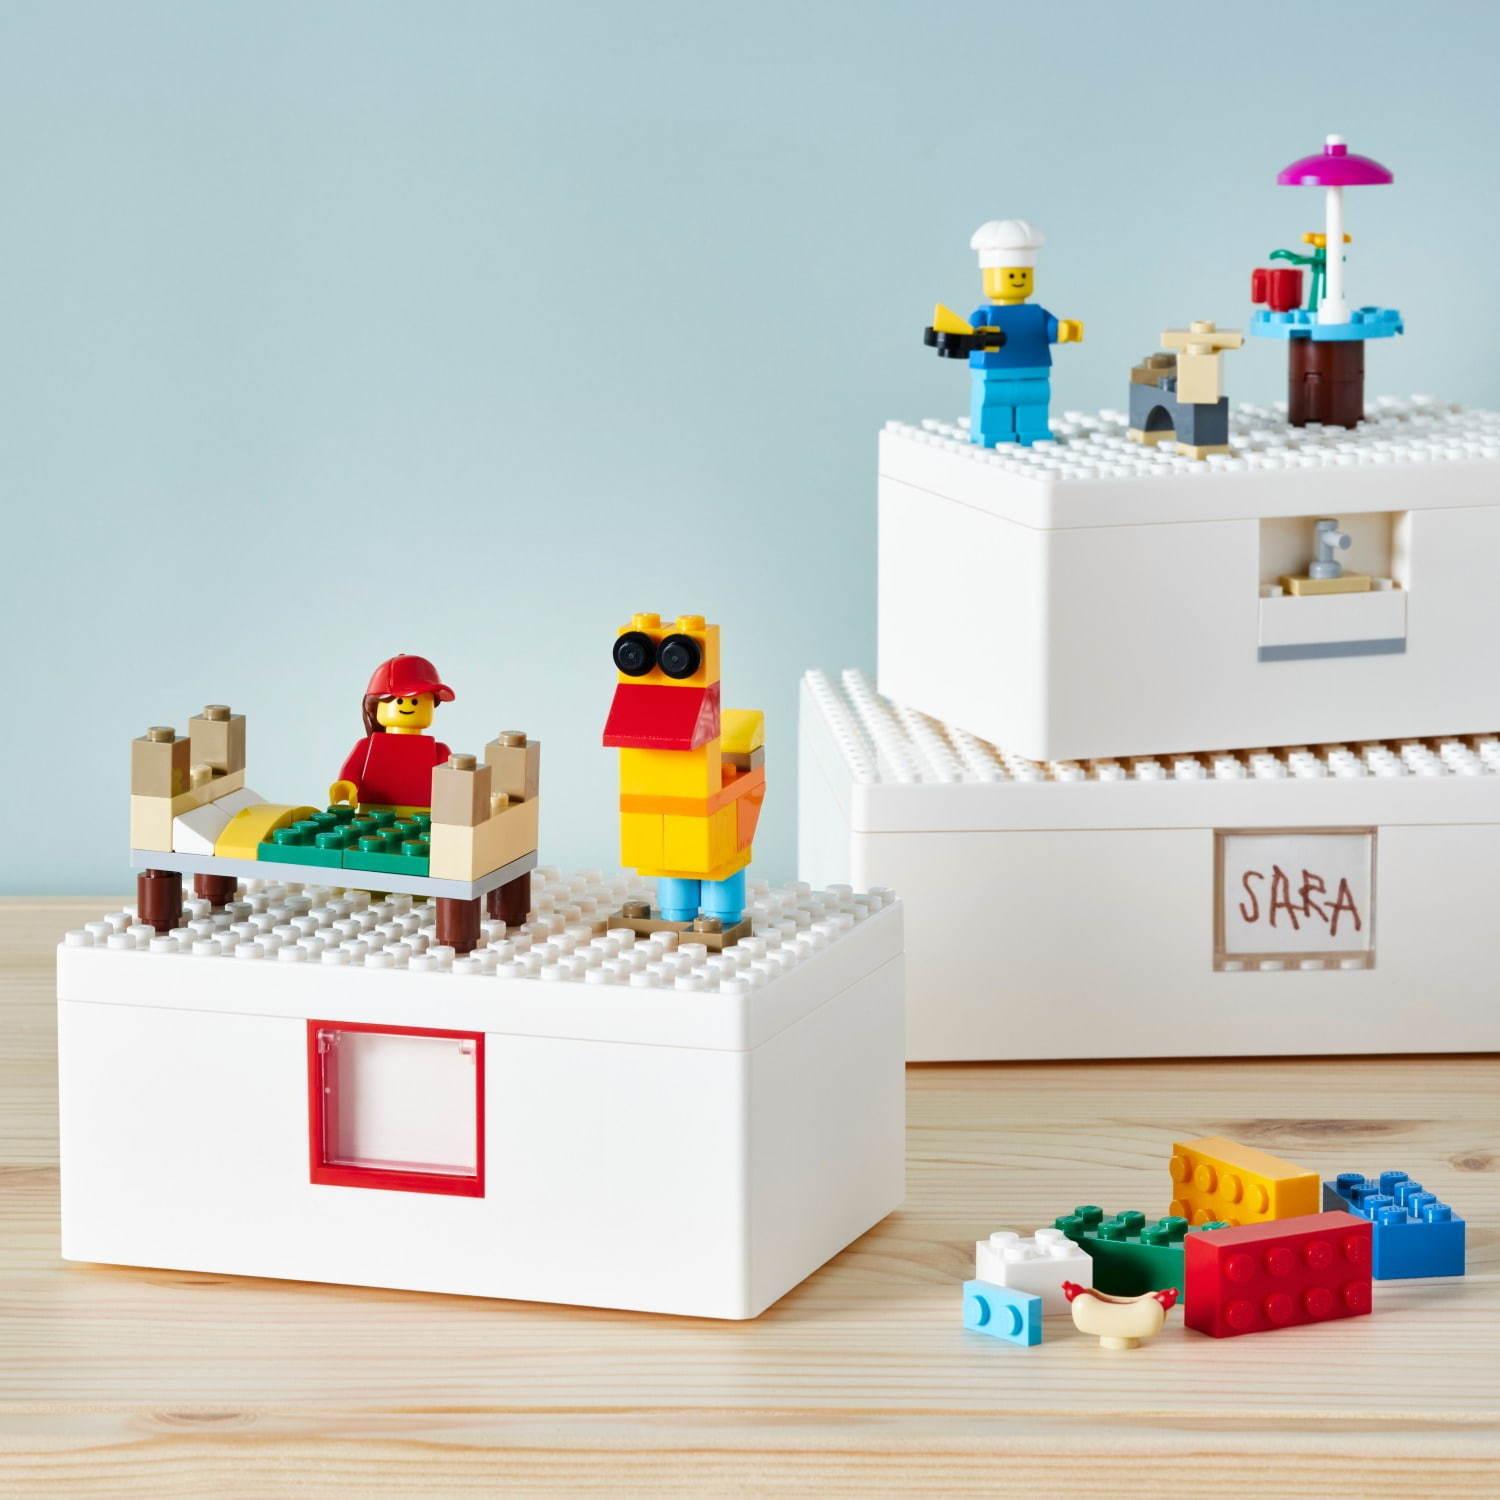 イケア×レゴグループのコラボ収納ボックス、“レゴブロック”型の全4サイズ&他レゴ製品と連結も可能 コピー